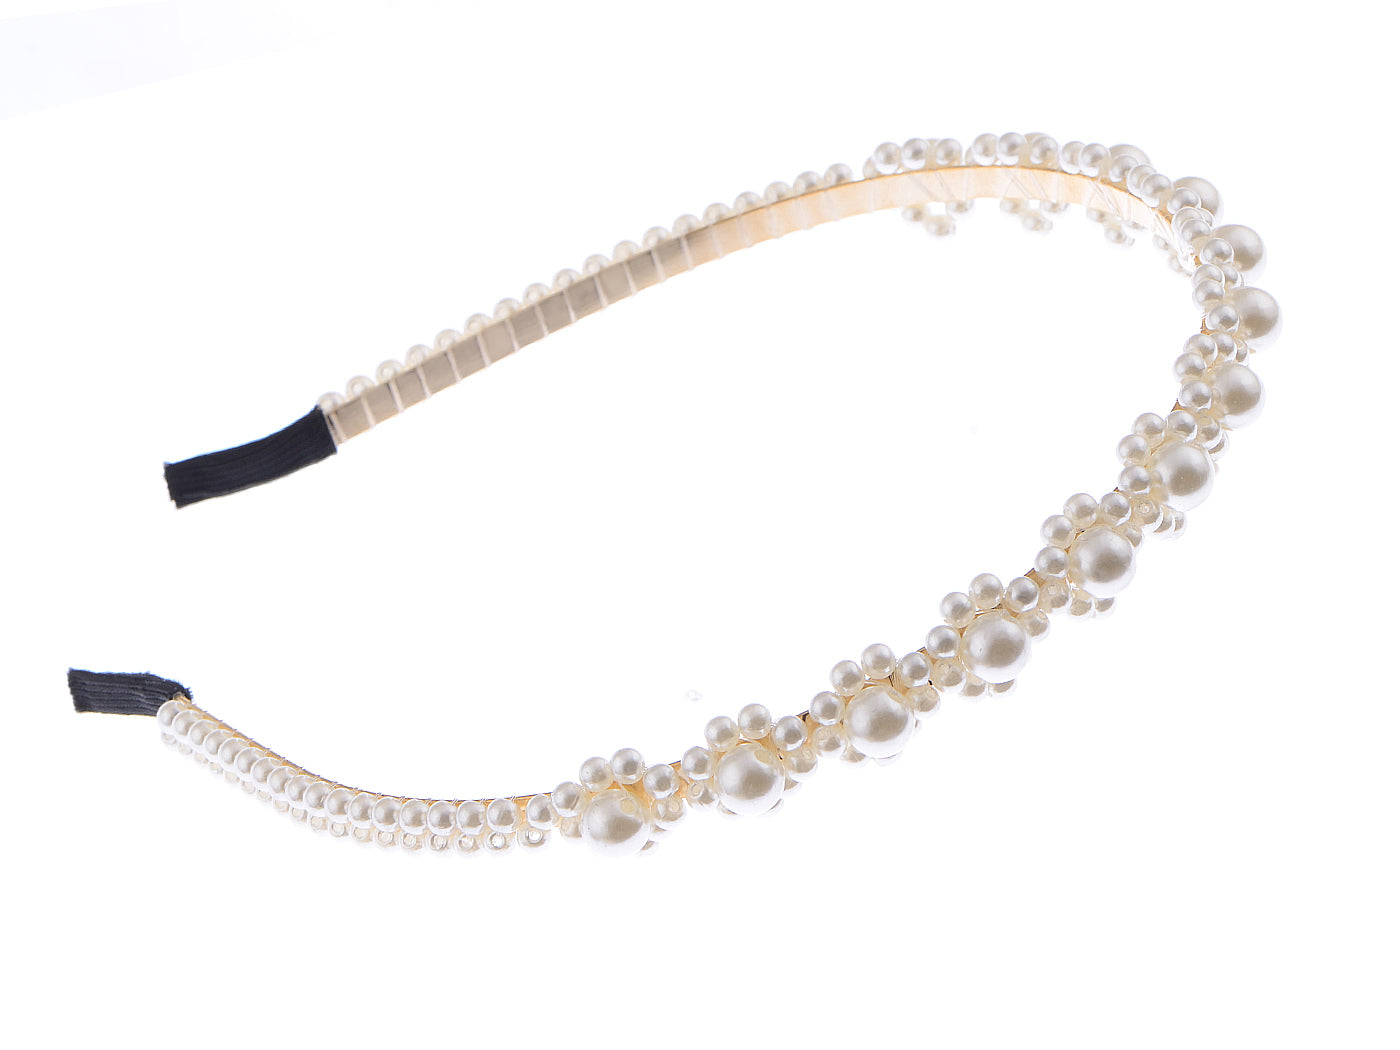 Pearls Bling Flower Headband For Women Gift